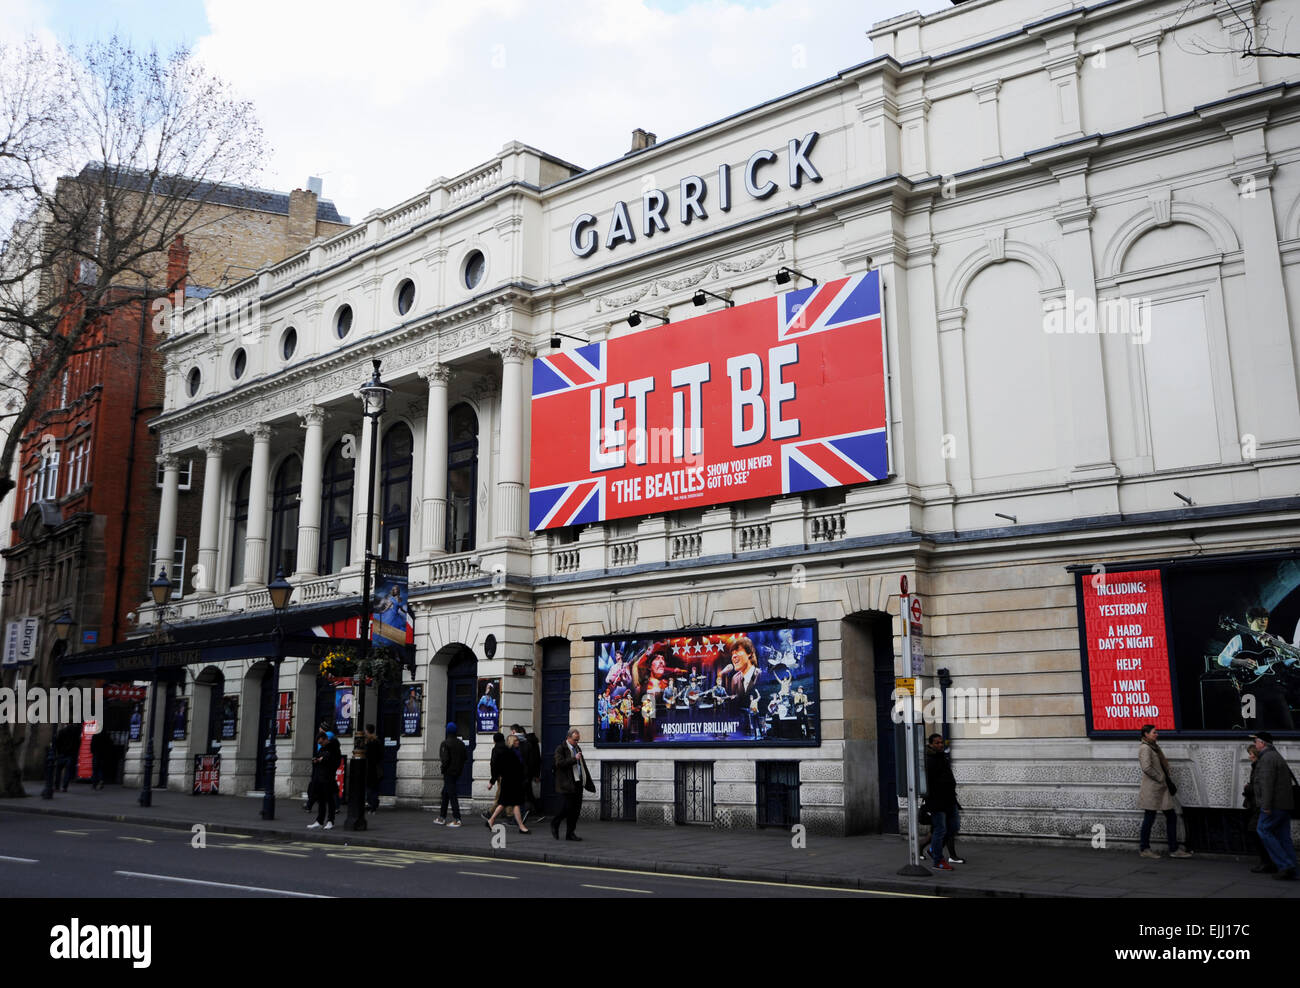 London England UK - Garrick Theatre wo lassen Sie es sein Musical zeigt Stockfoto